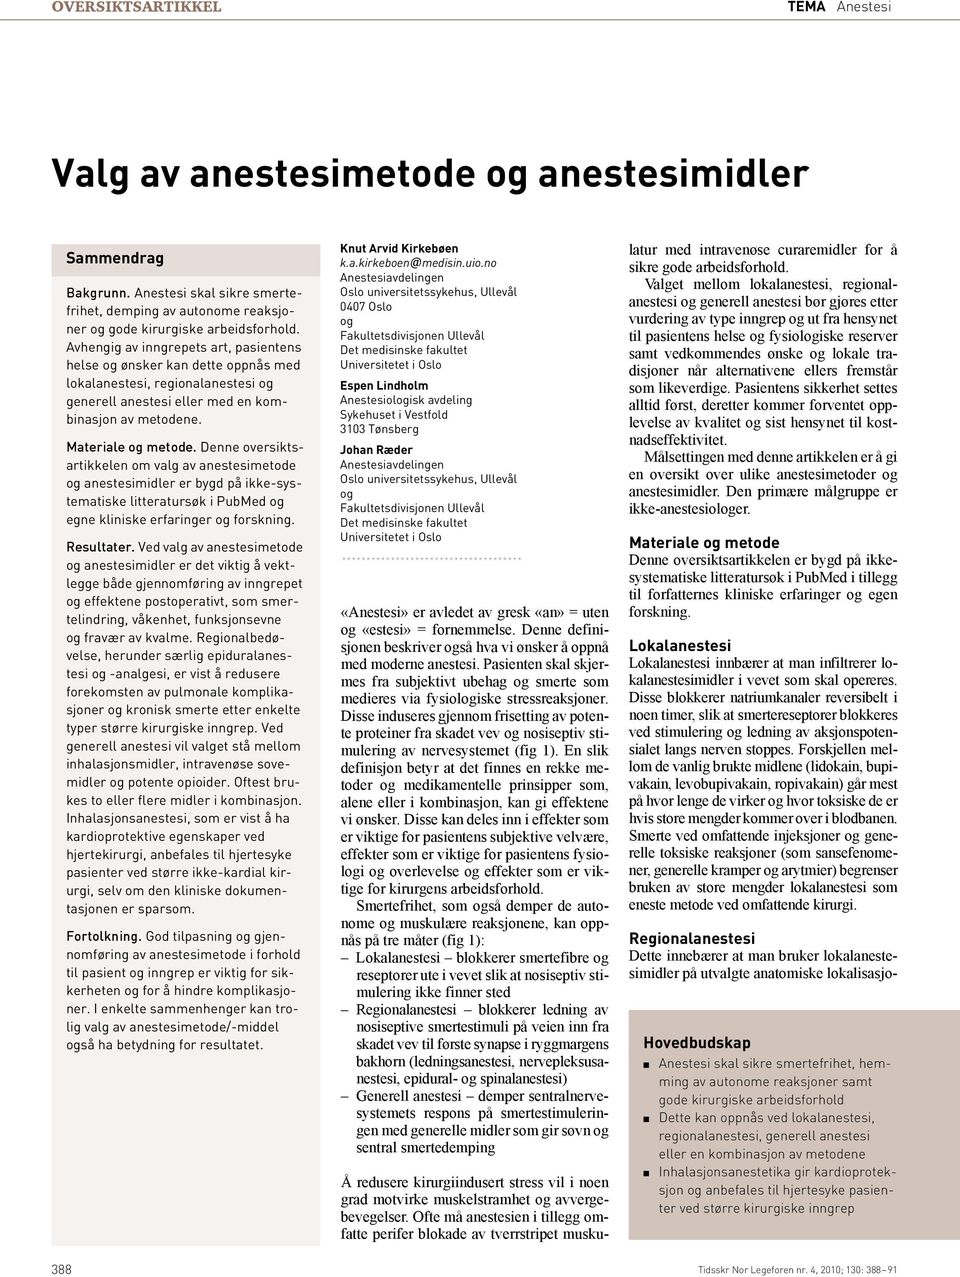 Denne oversiktsartikkelen om valg av anestesimetode og anestesimidler er bygd på ikke-systematiske litteratursøk i PubMed og egne kliniske erfaringer og forskning. Resultater.